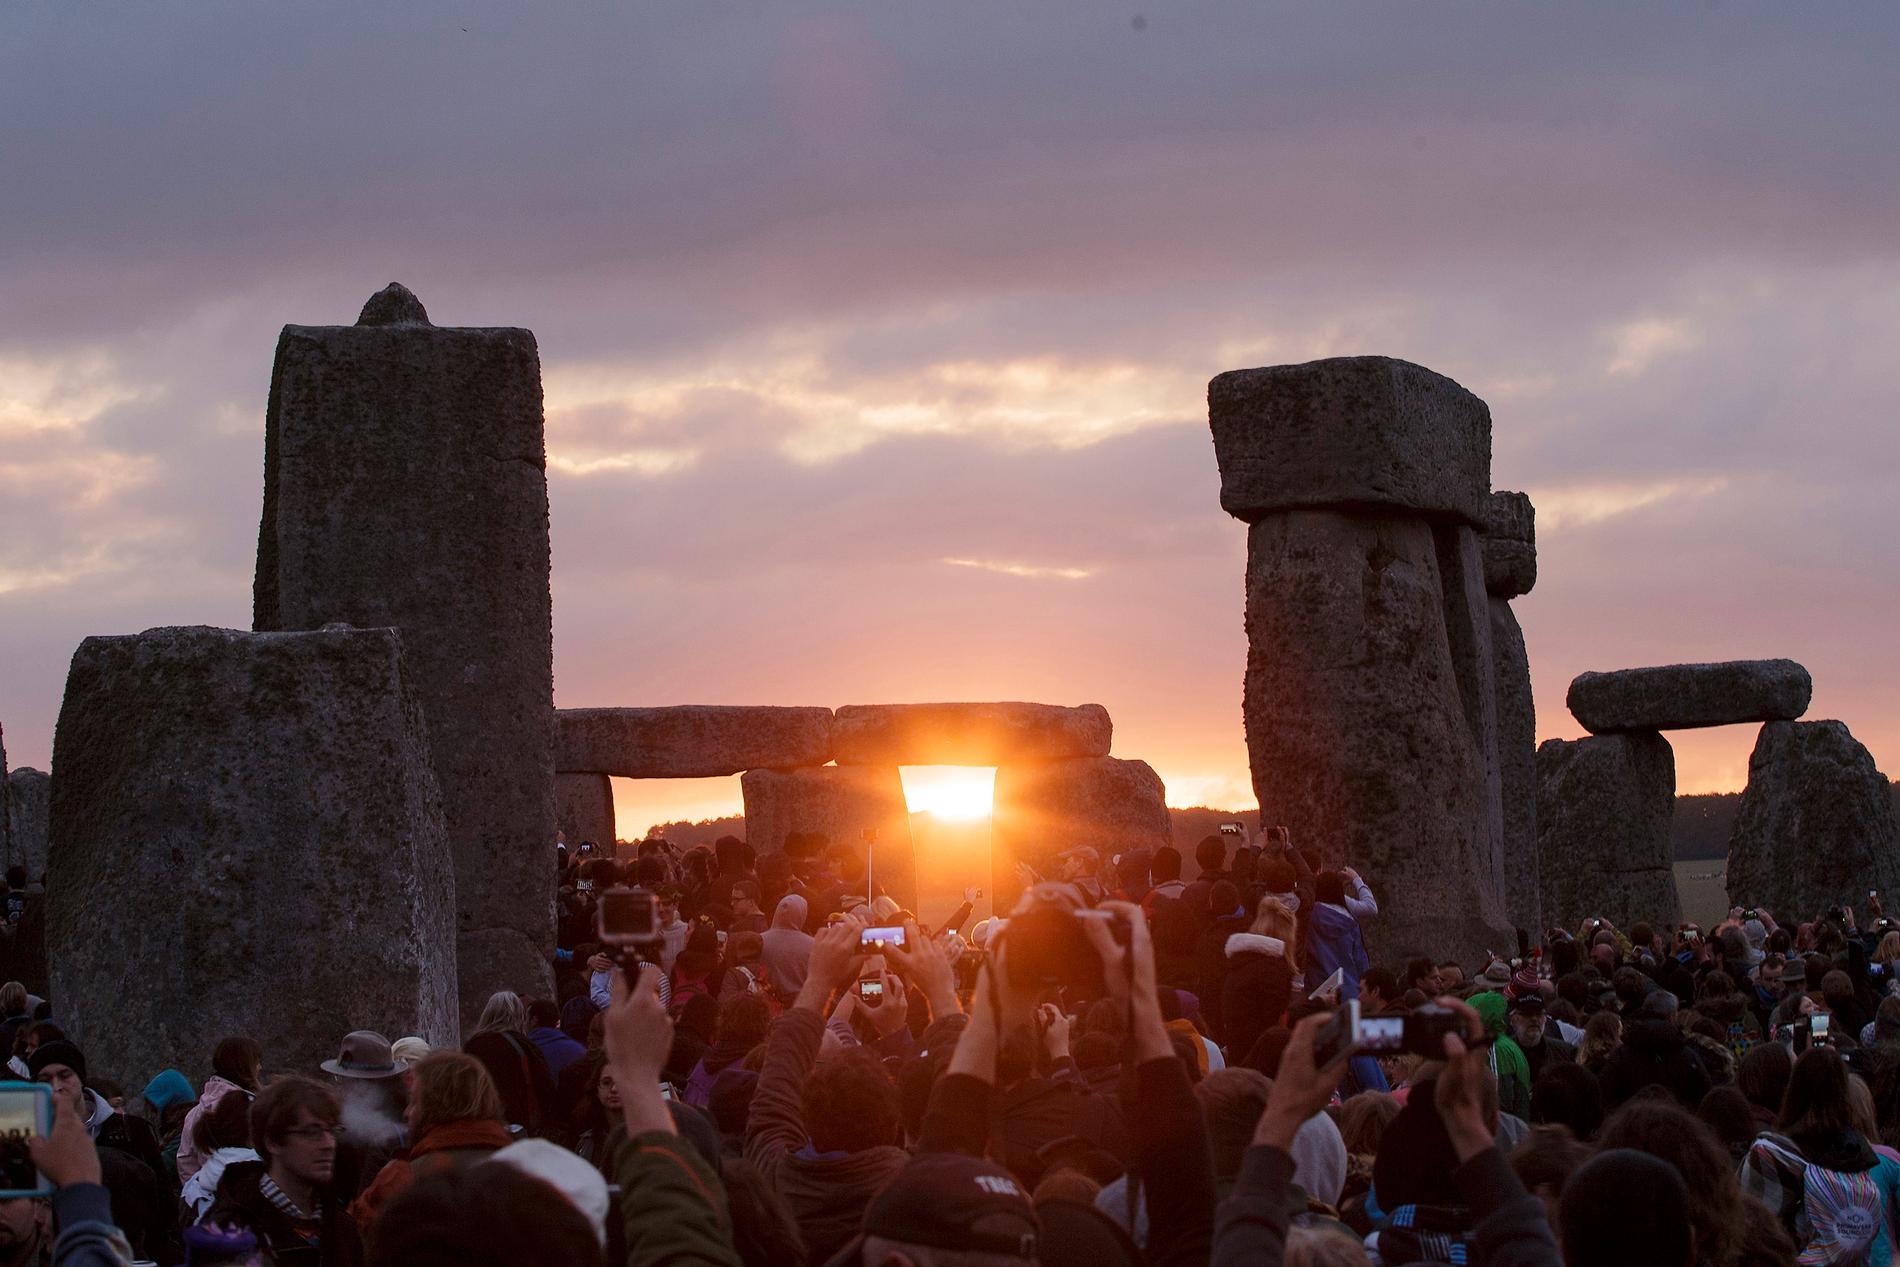 Forskare bedömer att stenarna i Stonehenge kommer från ett tidigare, liknande bygge i Wales. Här lyser den stigande solen genom en av stenportalerna vid sommarsolståndet, vilket upphovspersonerna verkar ha planerat för. Arkivbild.